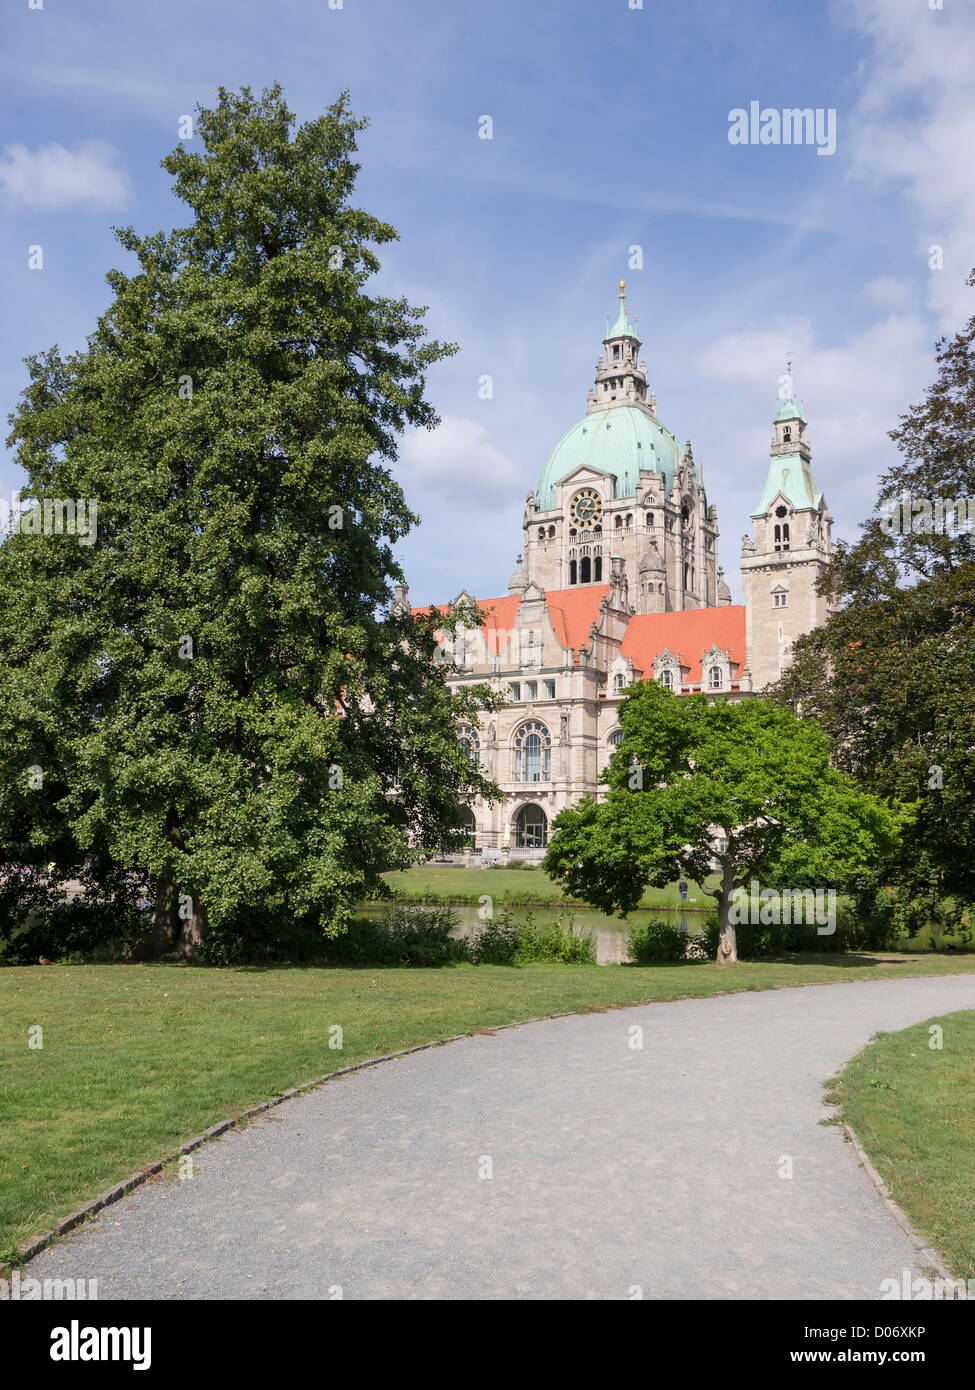 Neues Rathaus (neues Rathaus) in Hannover, Deutschland. Es befindet sich in einem öffentlichen Park mit Bäumen und einem großen See. Stockfoto